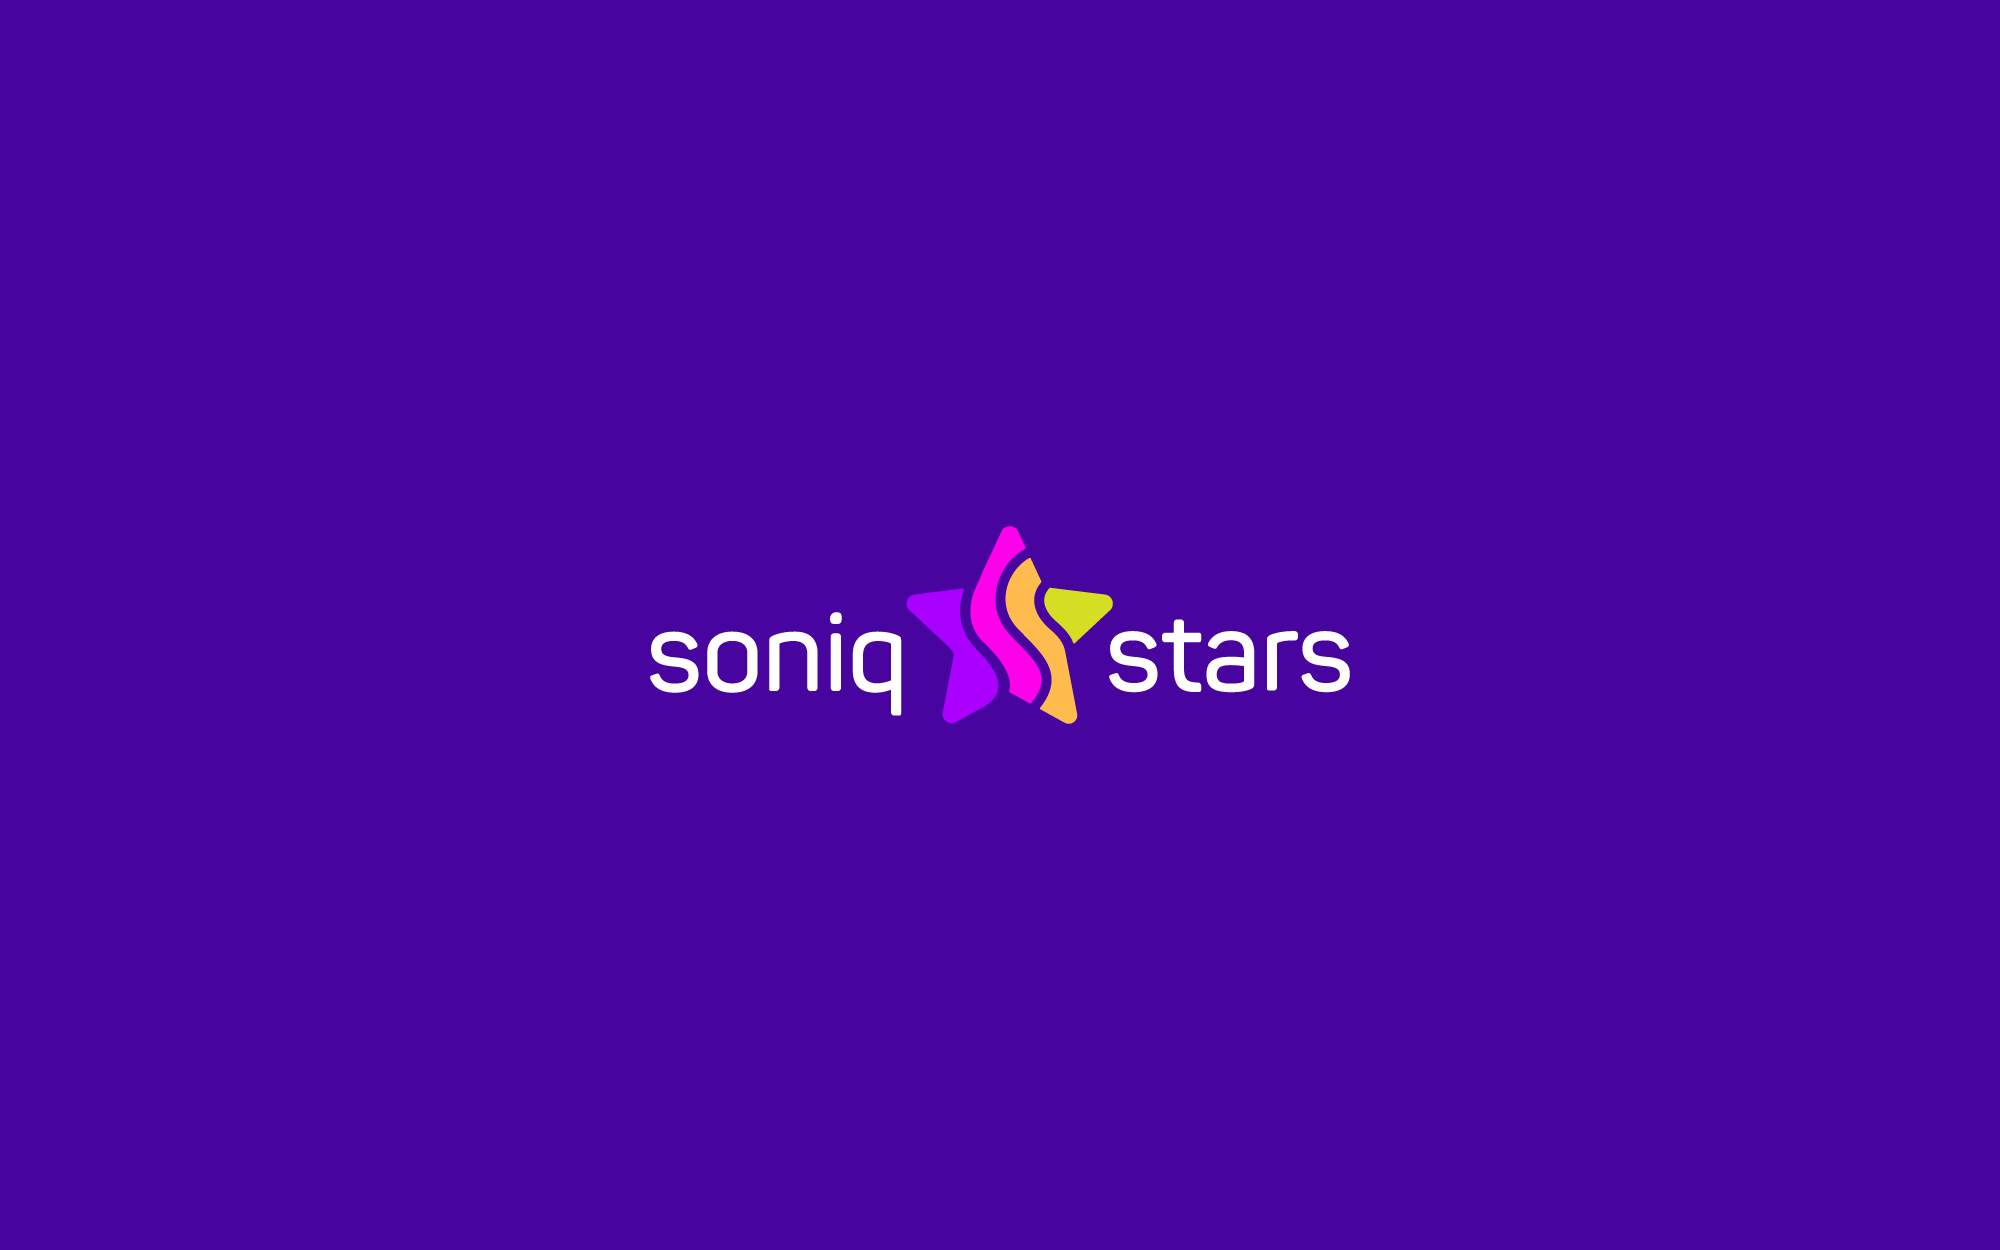 Soniq stars logo1